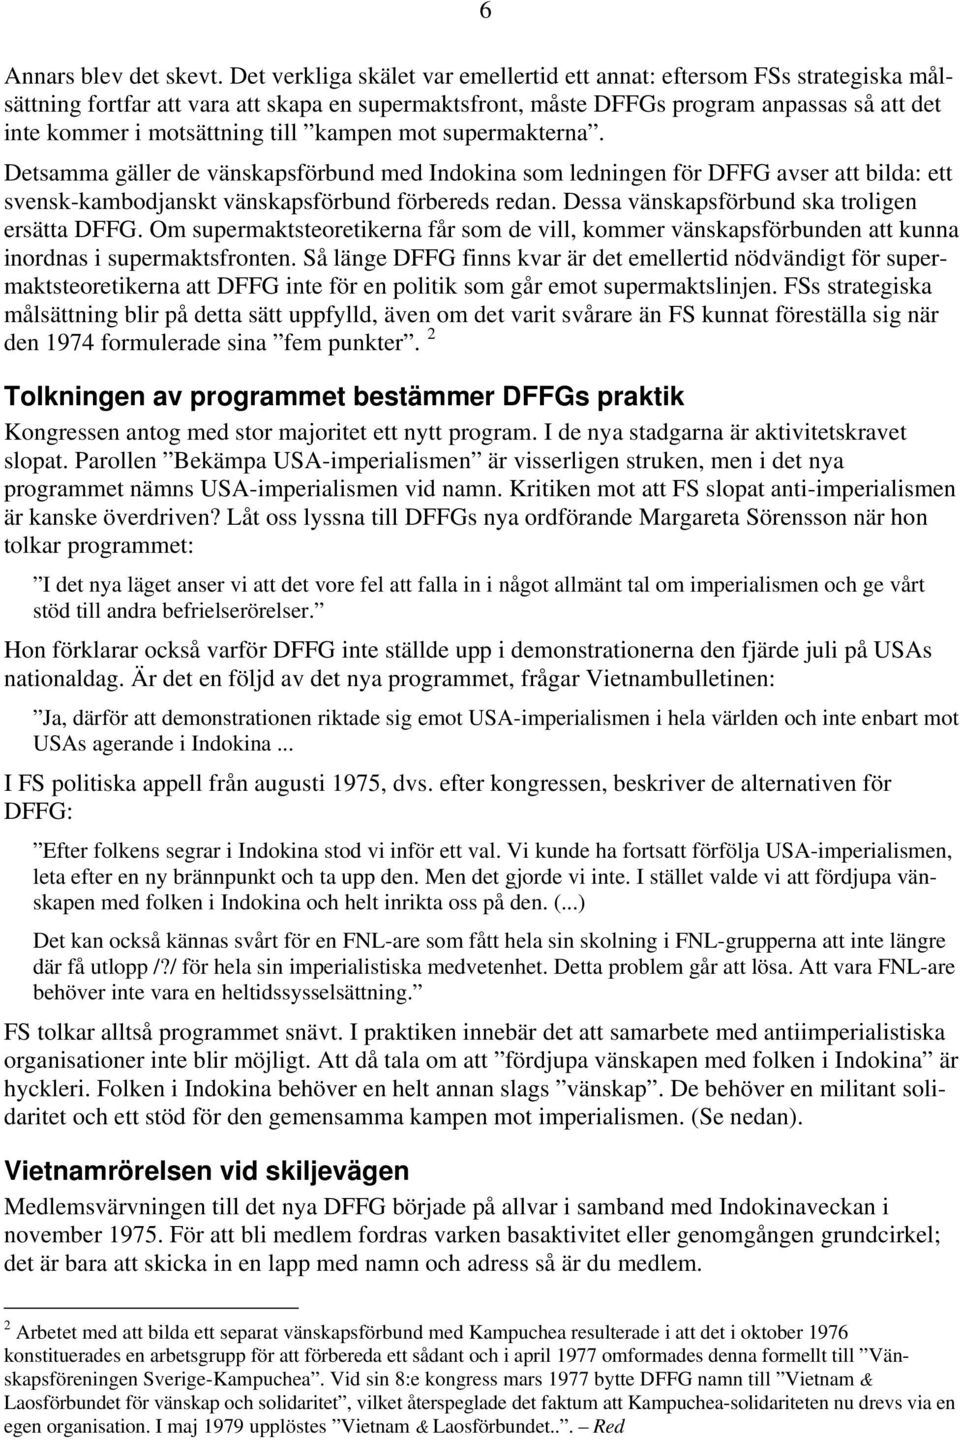 till kampen mot supermakterna. Detsamma gäller de vänskapsförbund med Indokina som ledningen för DFFG avser att bilda: ett svensk-kambodjanskt vänskapsförbund förbereds redan.